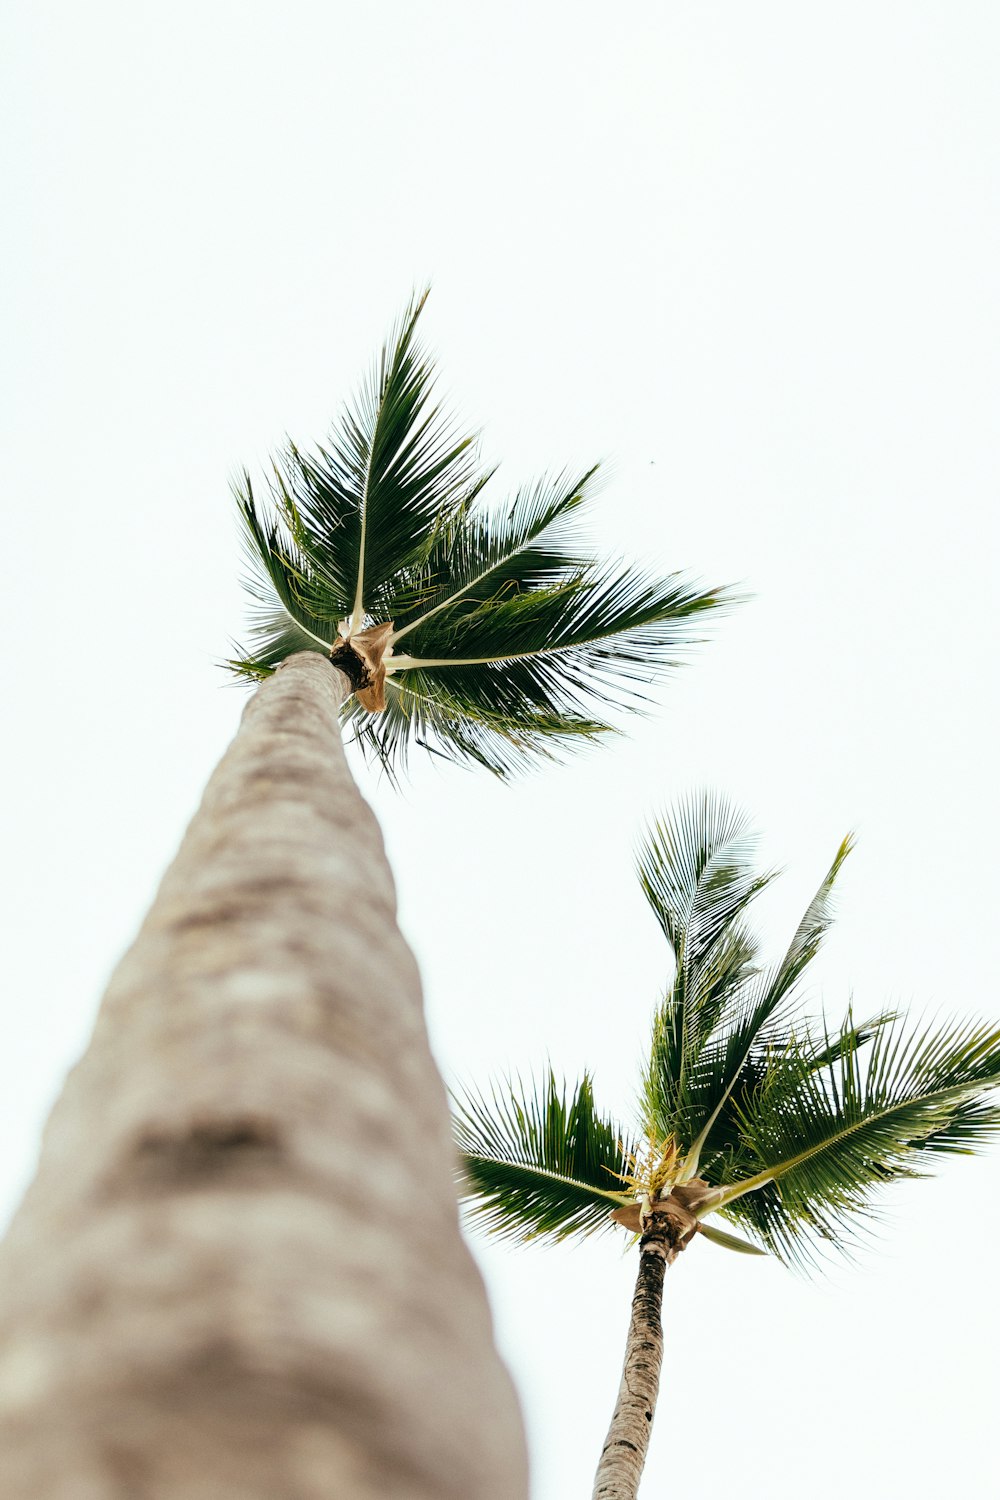 palmeira verde sob o céu branco durante o dia